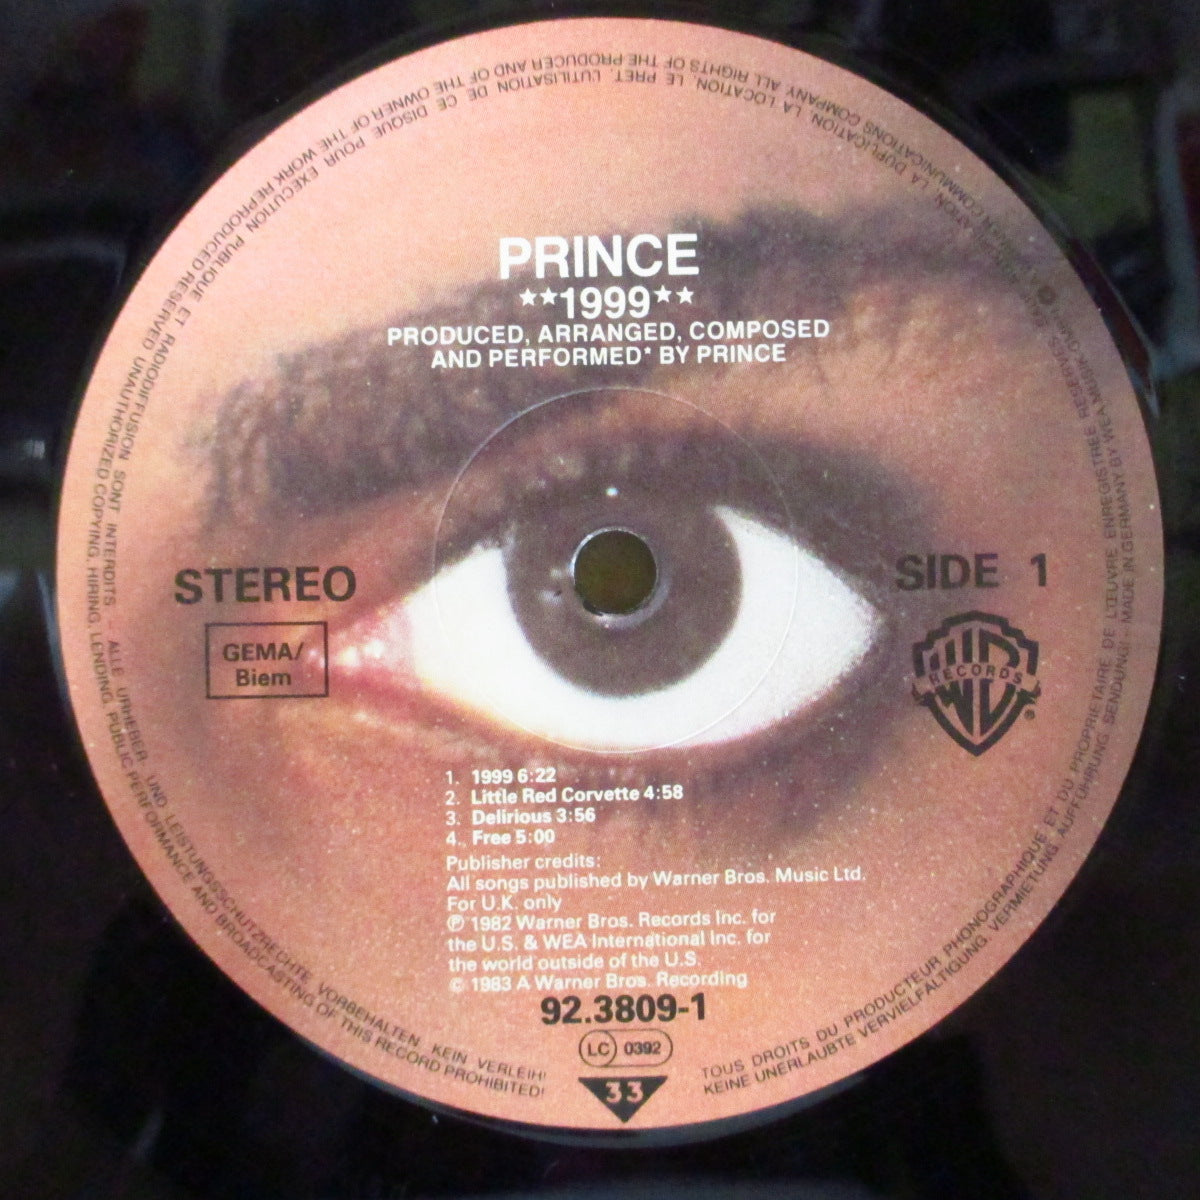 PRINCE (プリンス)  - 1999 [7曲入り] (UK-EU オリジナル7曲入り MLP/バーコード無し光沢ジャケ)